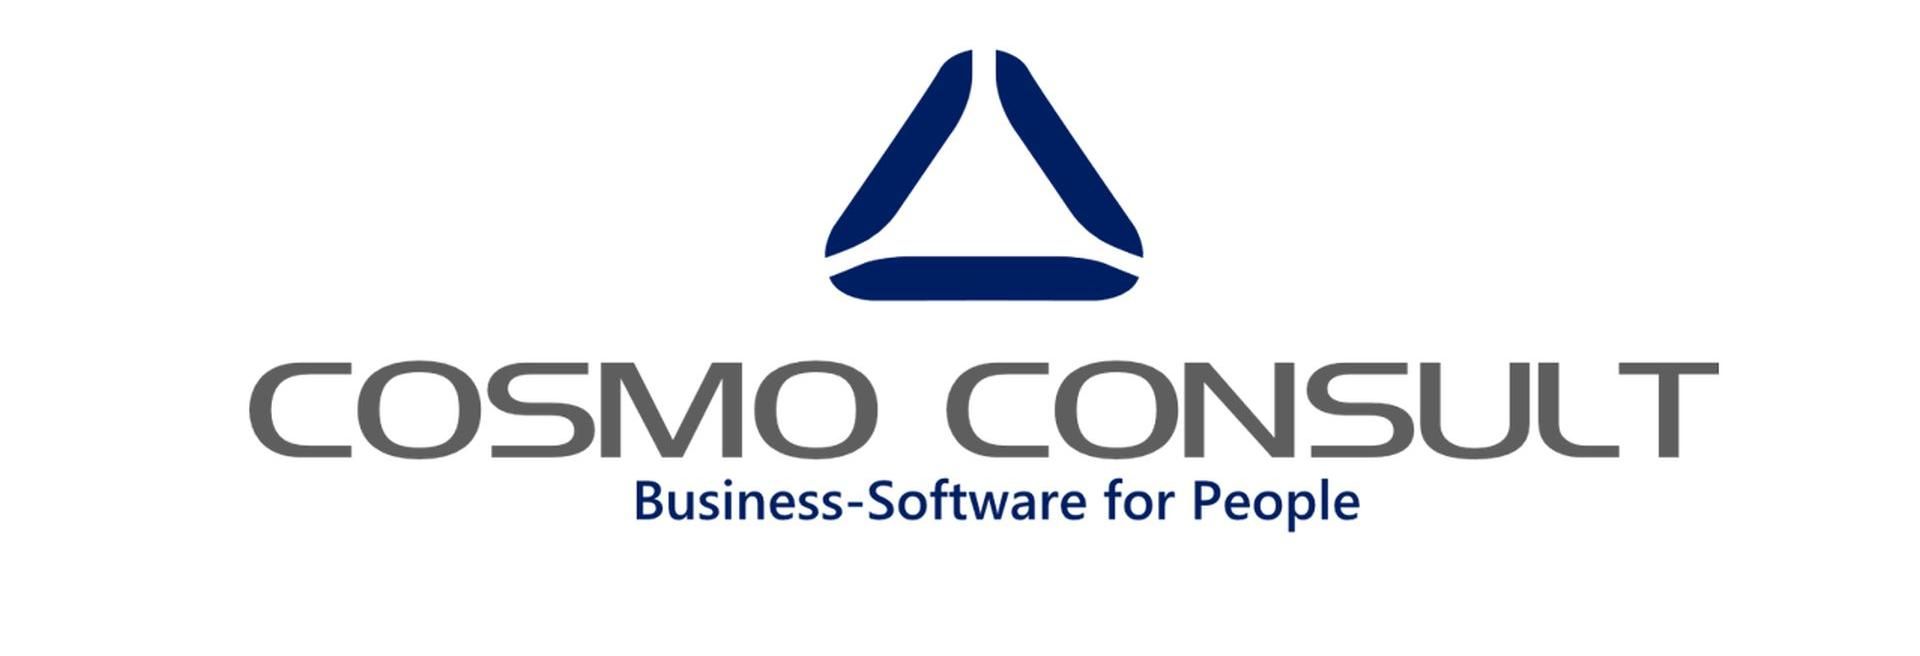 IT fejlesztő és szolgáltató központot hoz létre Debrecenben és Szegeden a Cosmo Consult csoport